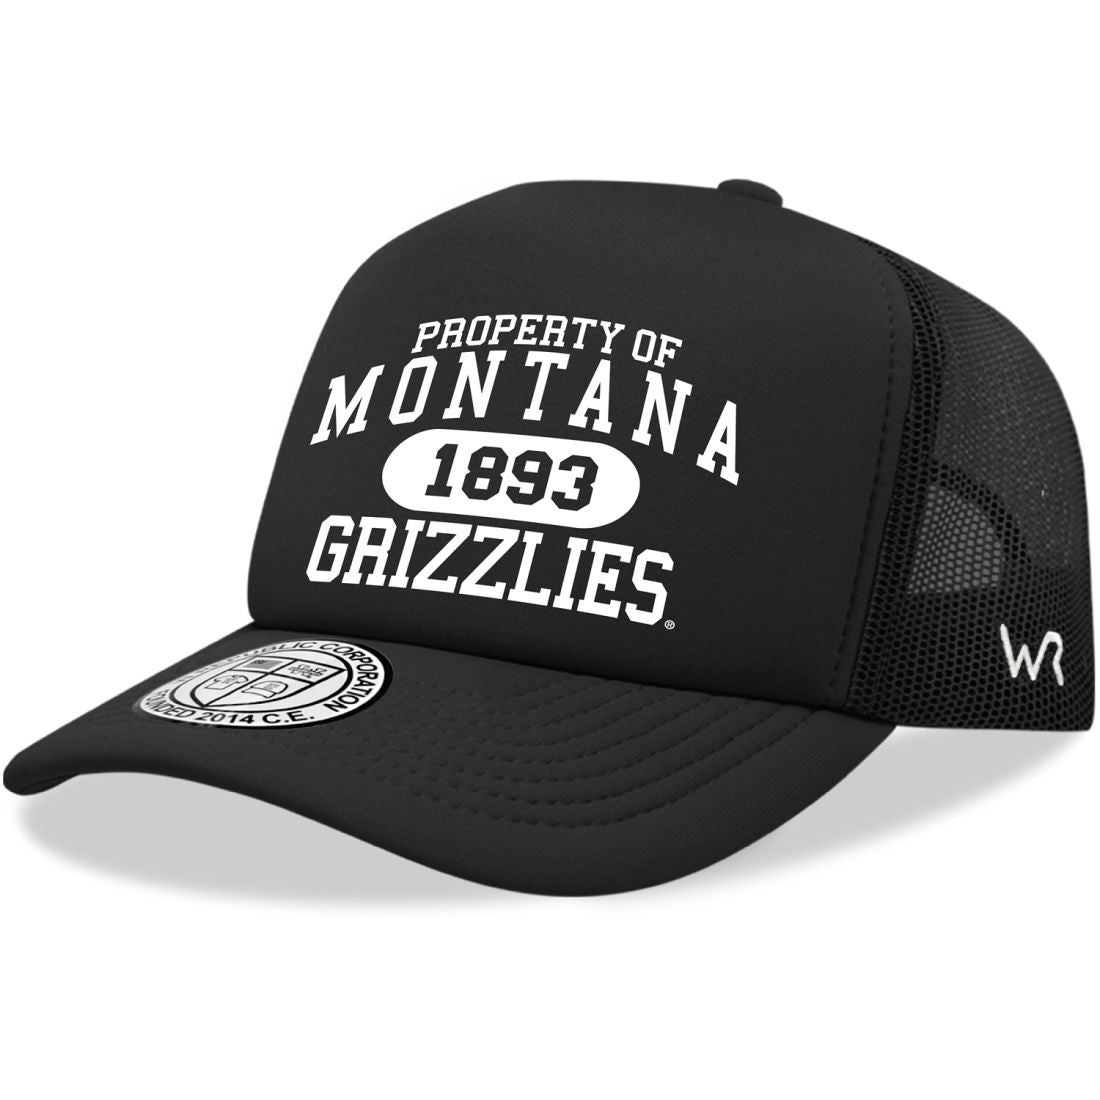 UM University of Montana Grizzlies Property Foam Trucker Hats